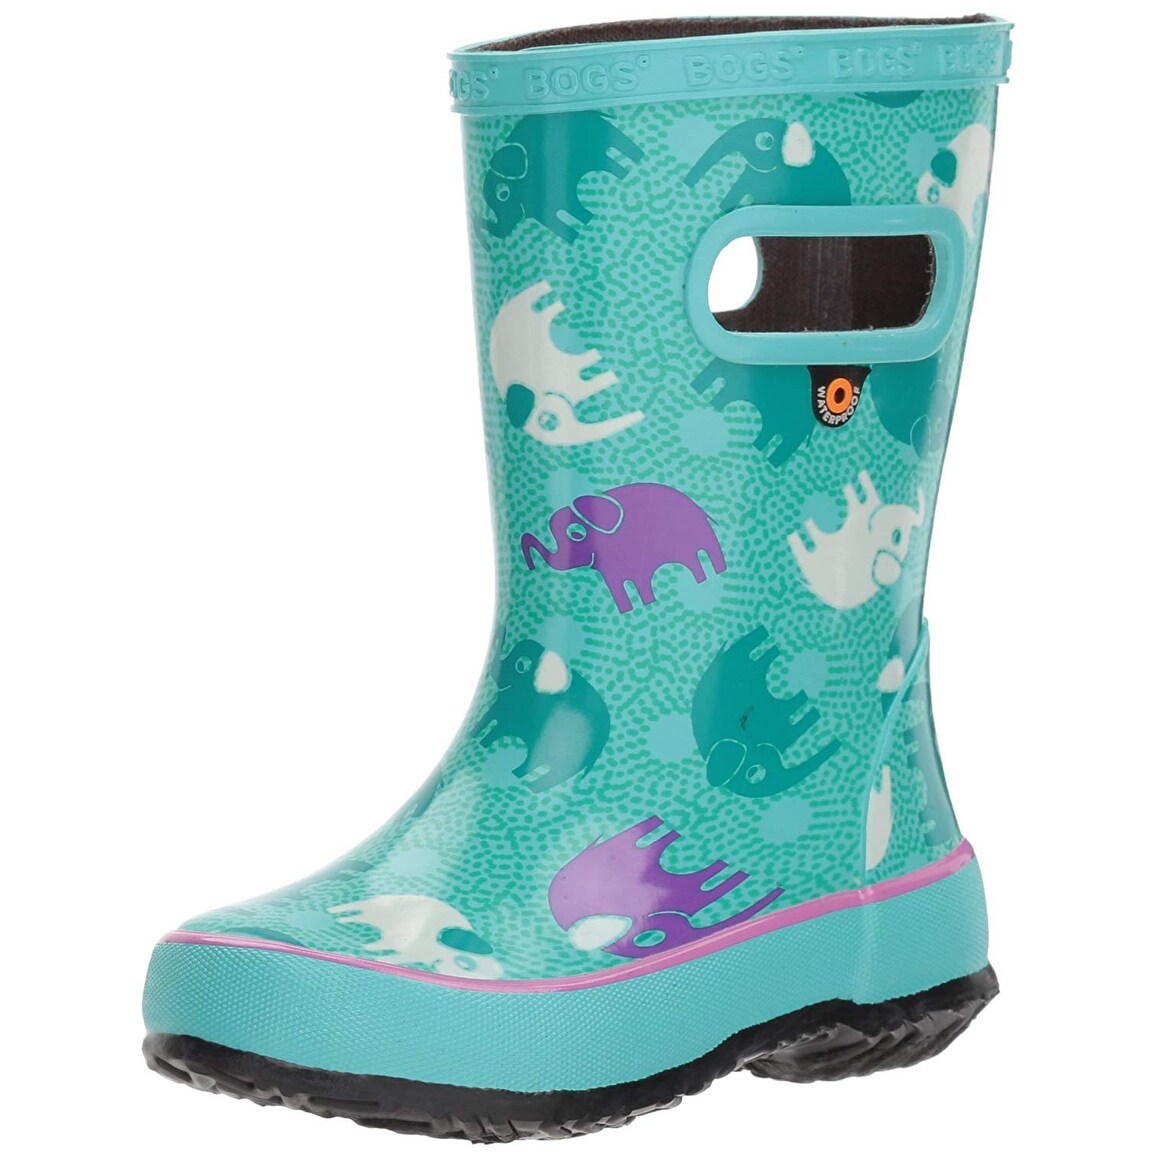 bogs skipper rain boots